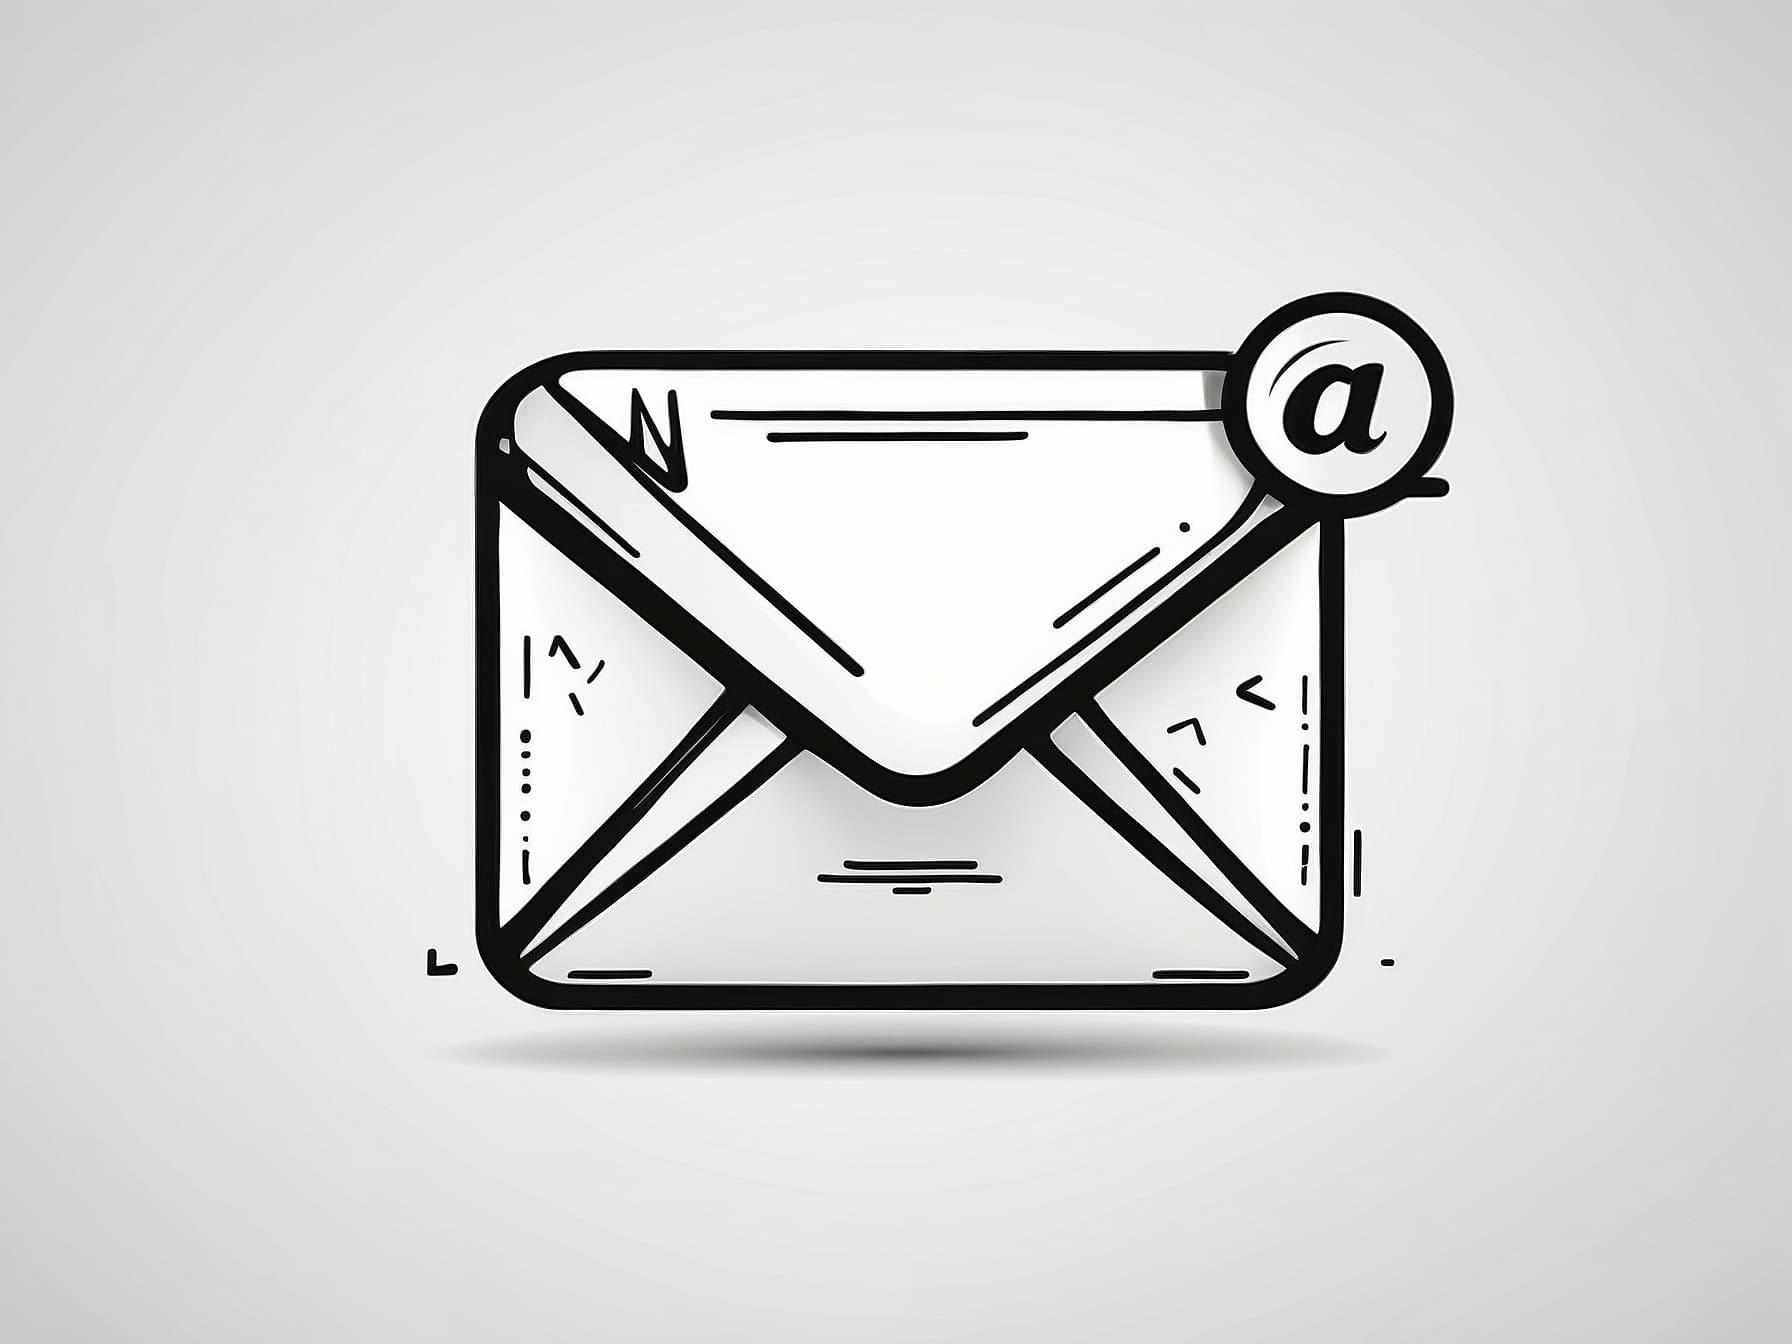 Personalisierter Mail-Versand an ausgewählte Kundengruppen wird automatisiert